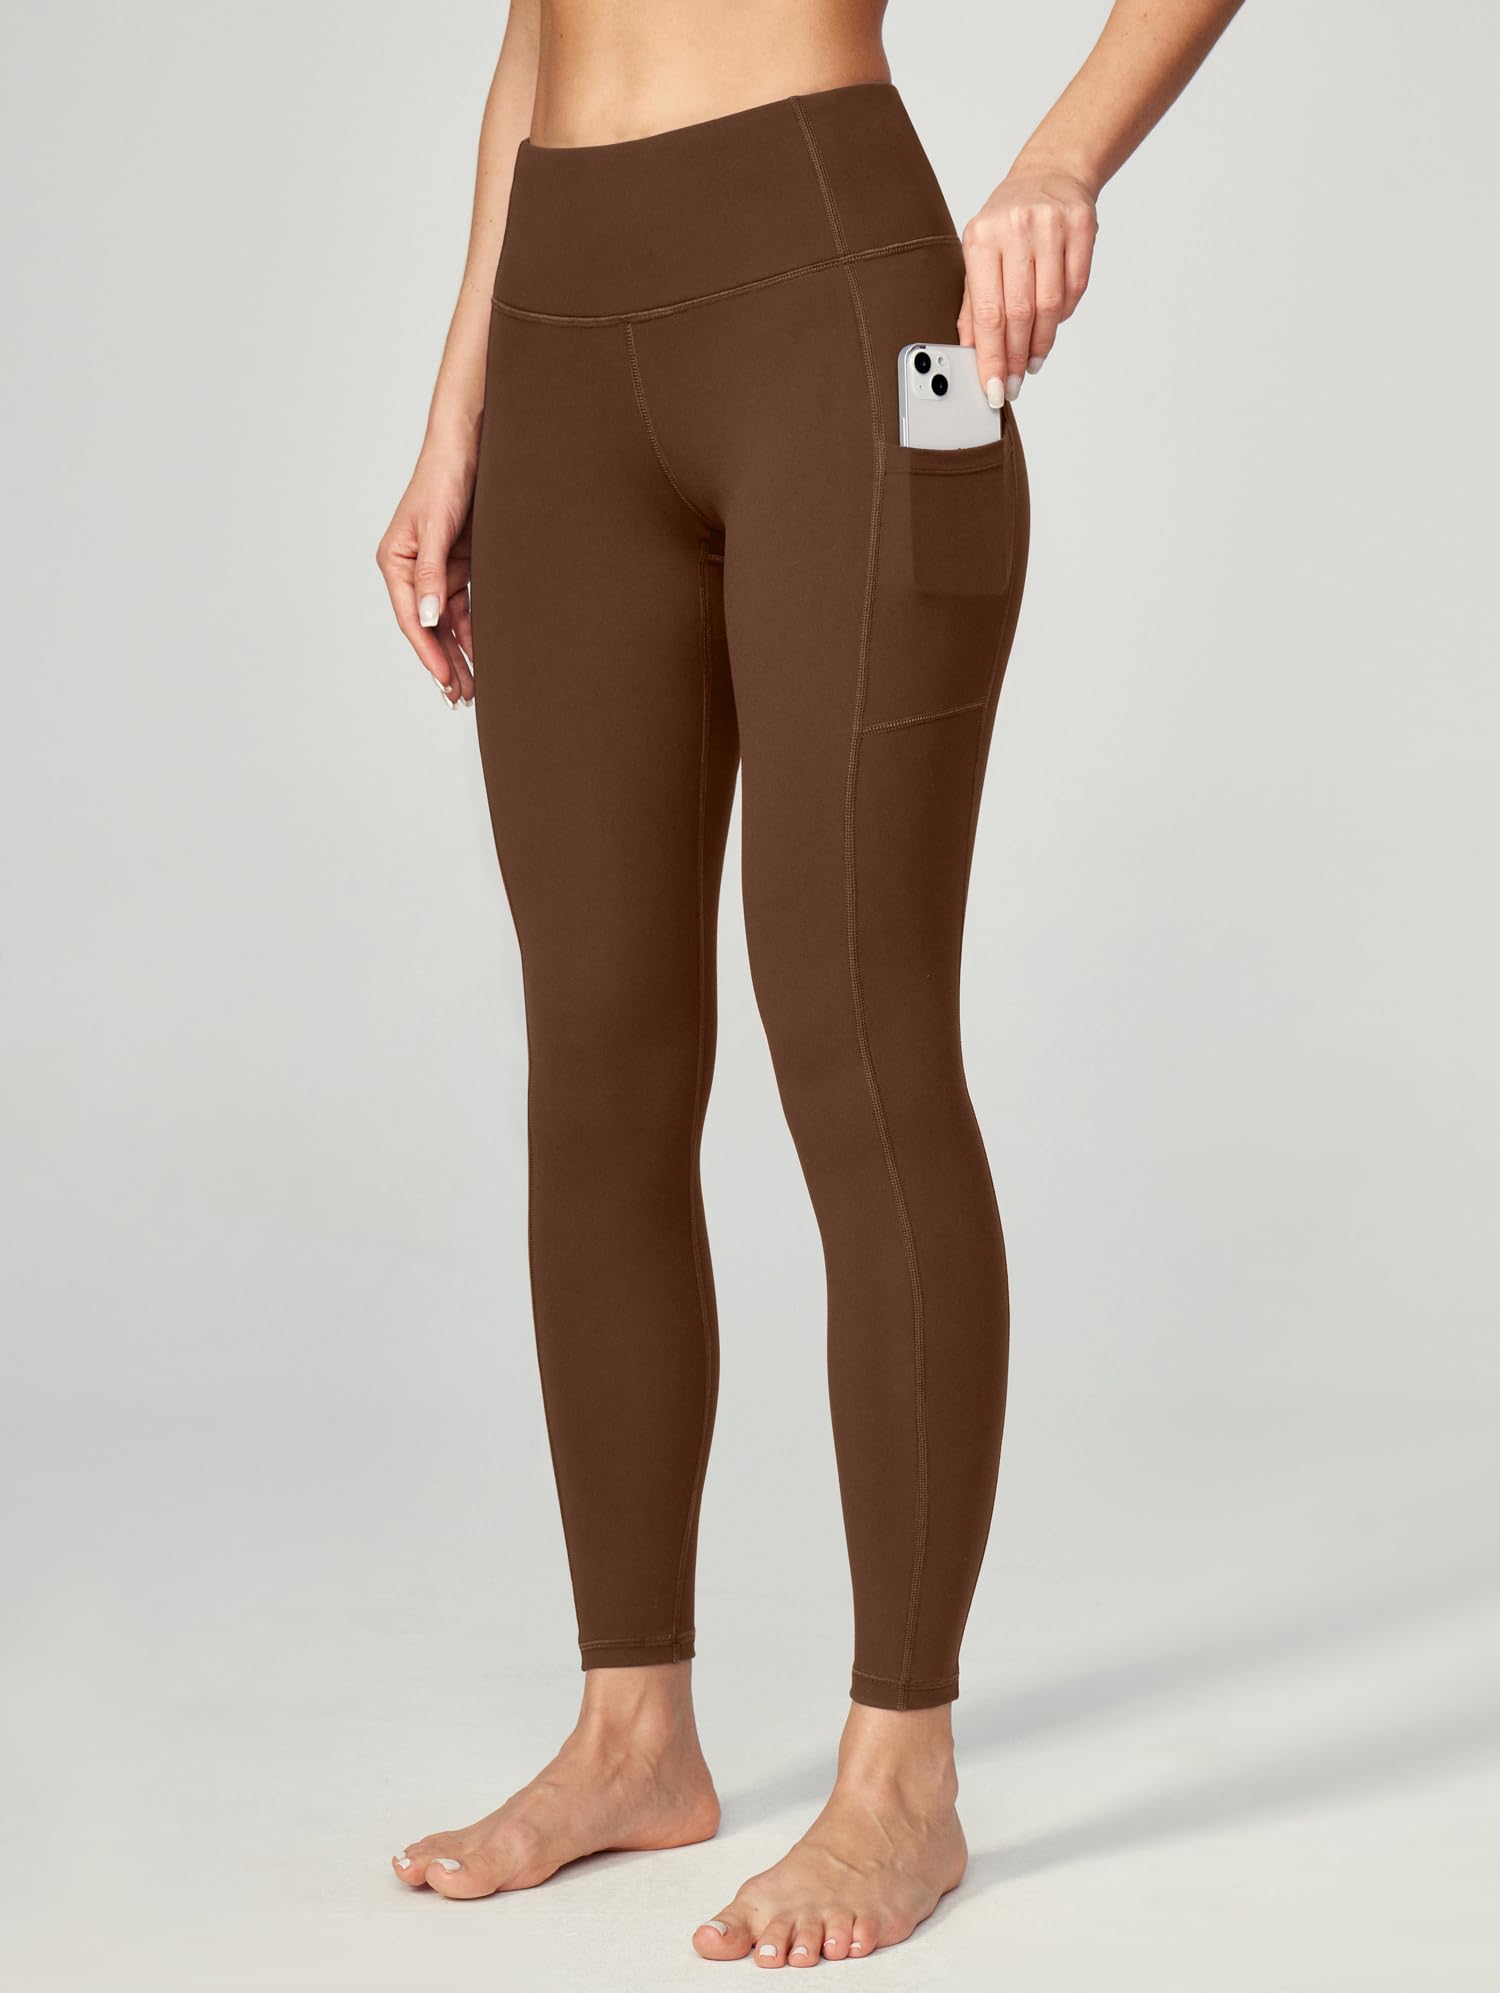 Buy Ewedoos Women's Yoga Pants with Pockets - Leggings with